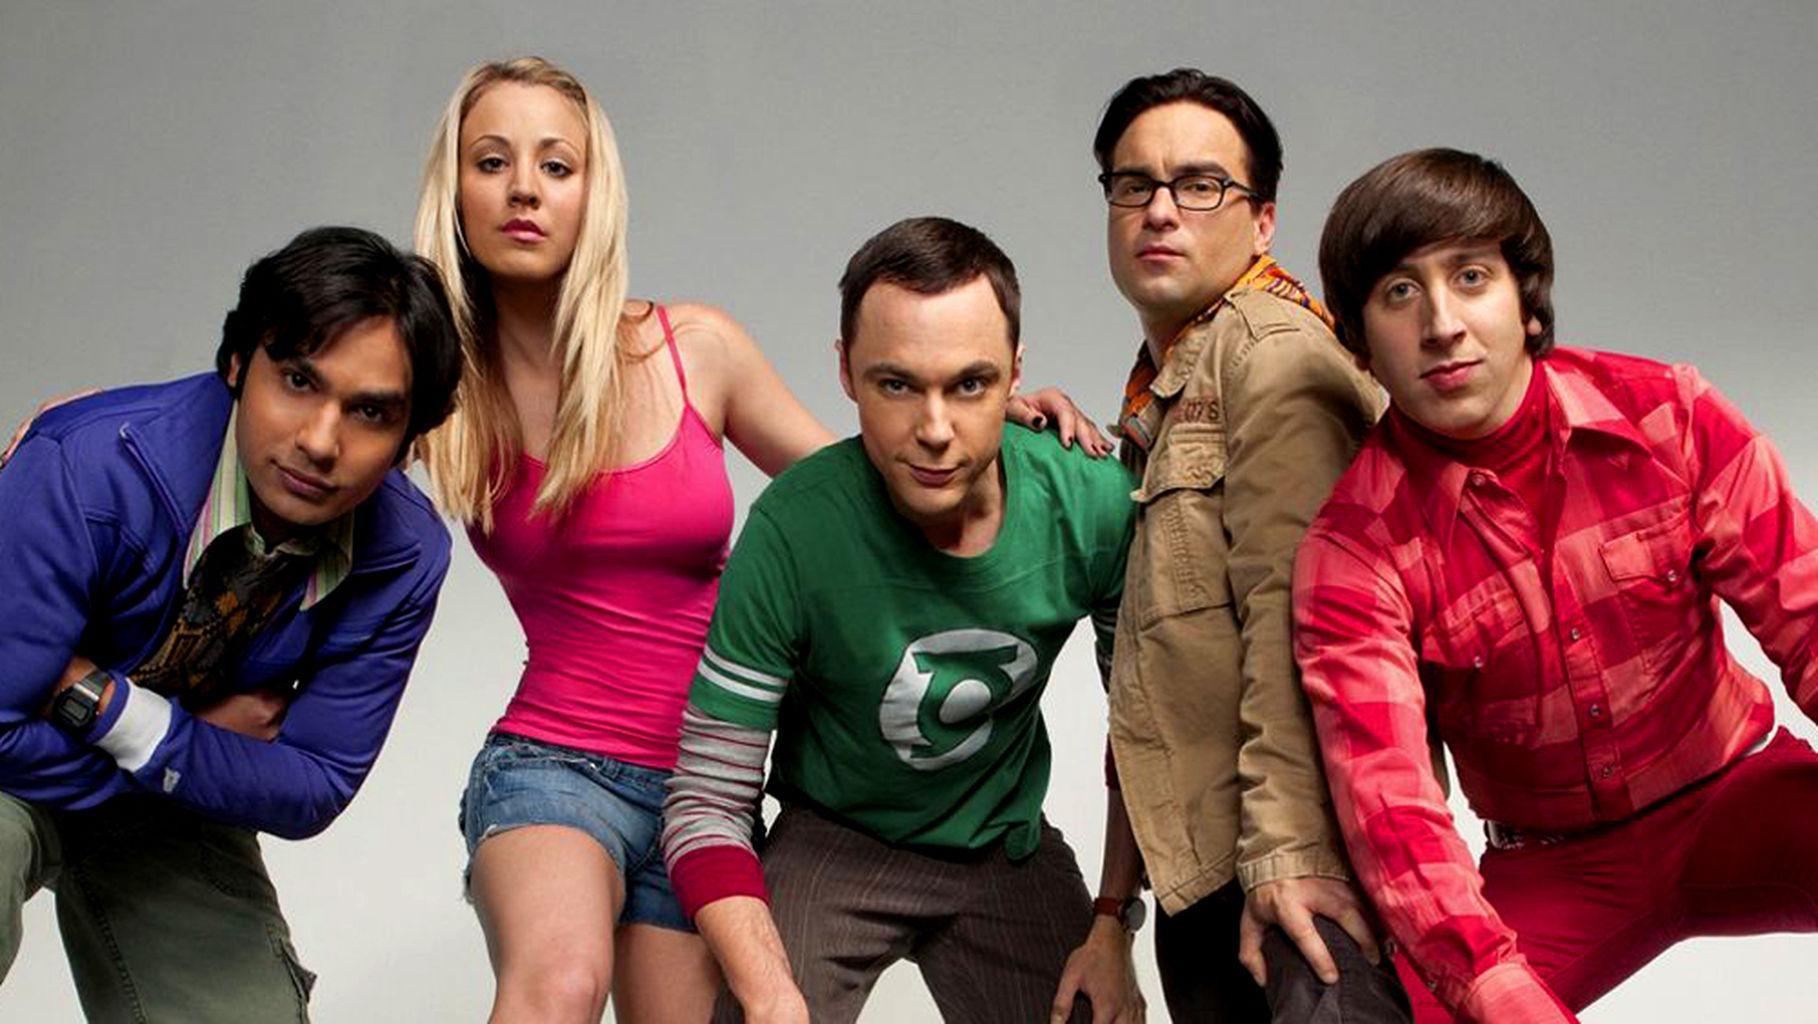 The Big Bang Theory (TV Series 2007–2019) - IMDb